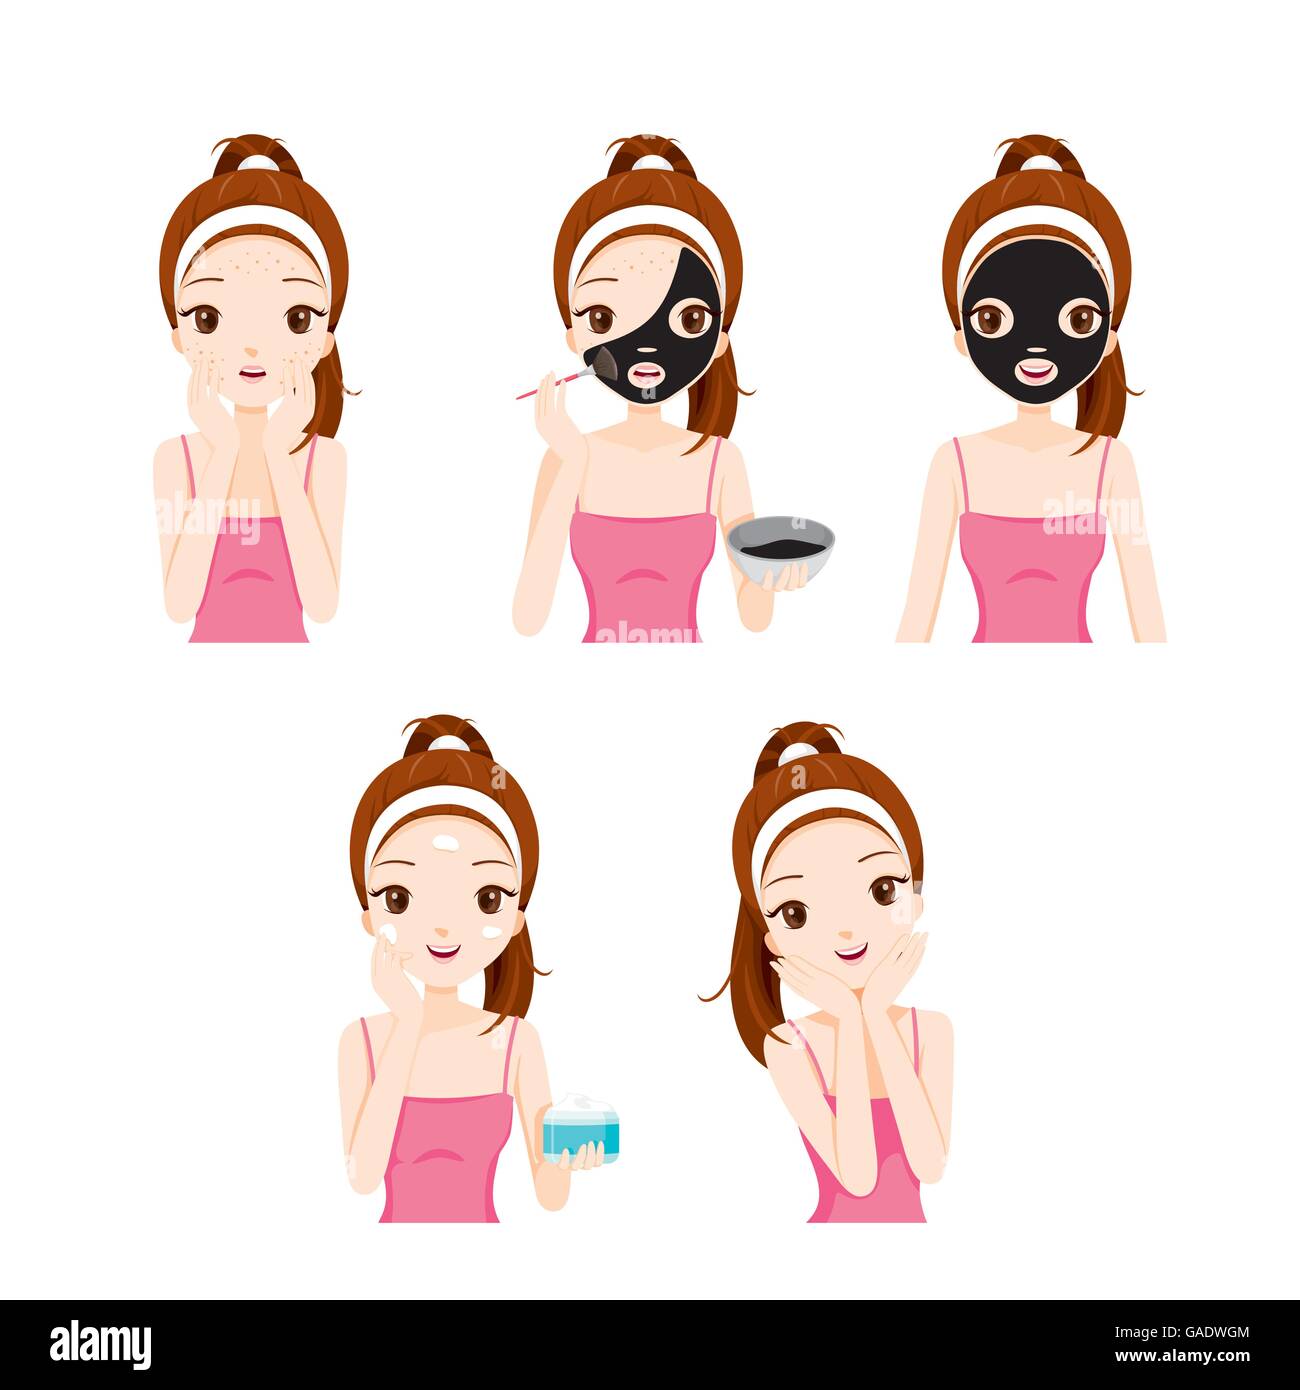 Mädchen pflegt und schützt ihr Gesicht mit verschiedenen Aktionen festgelegt, Gesichtsbehandlung, Kosmetik, Make-up, Gesundheit, Beauty, Lifestyle, Mode Stock Vektor